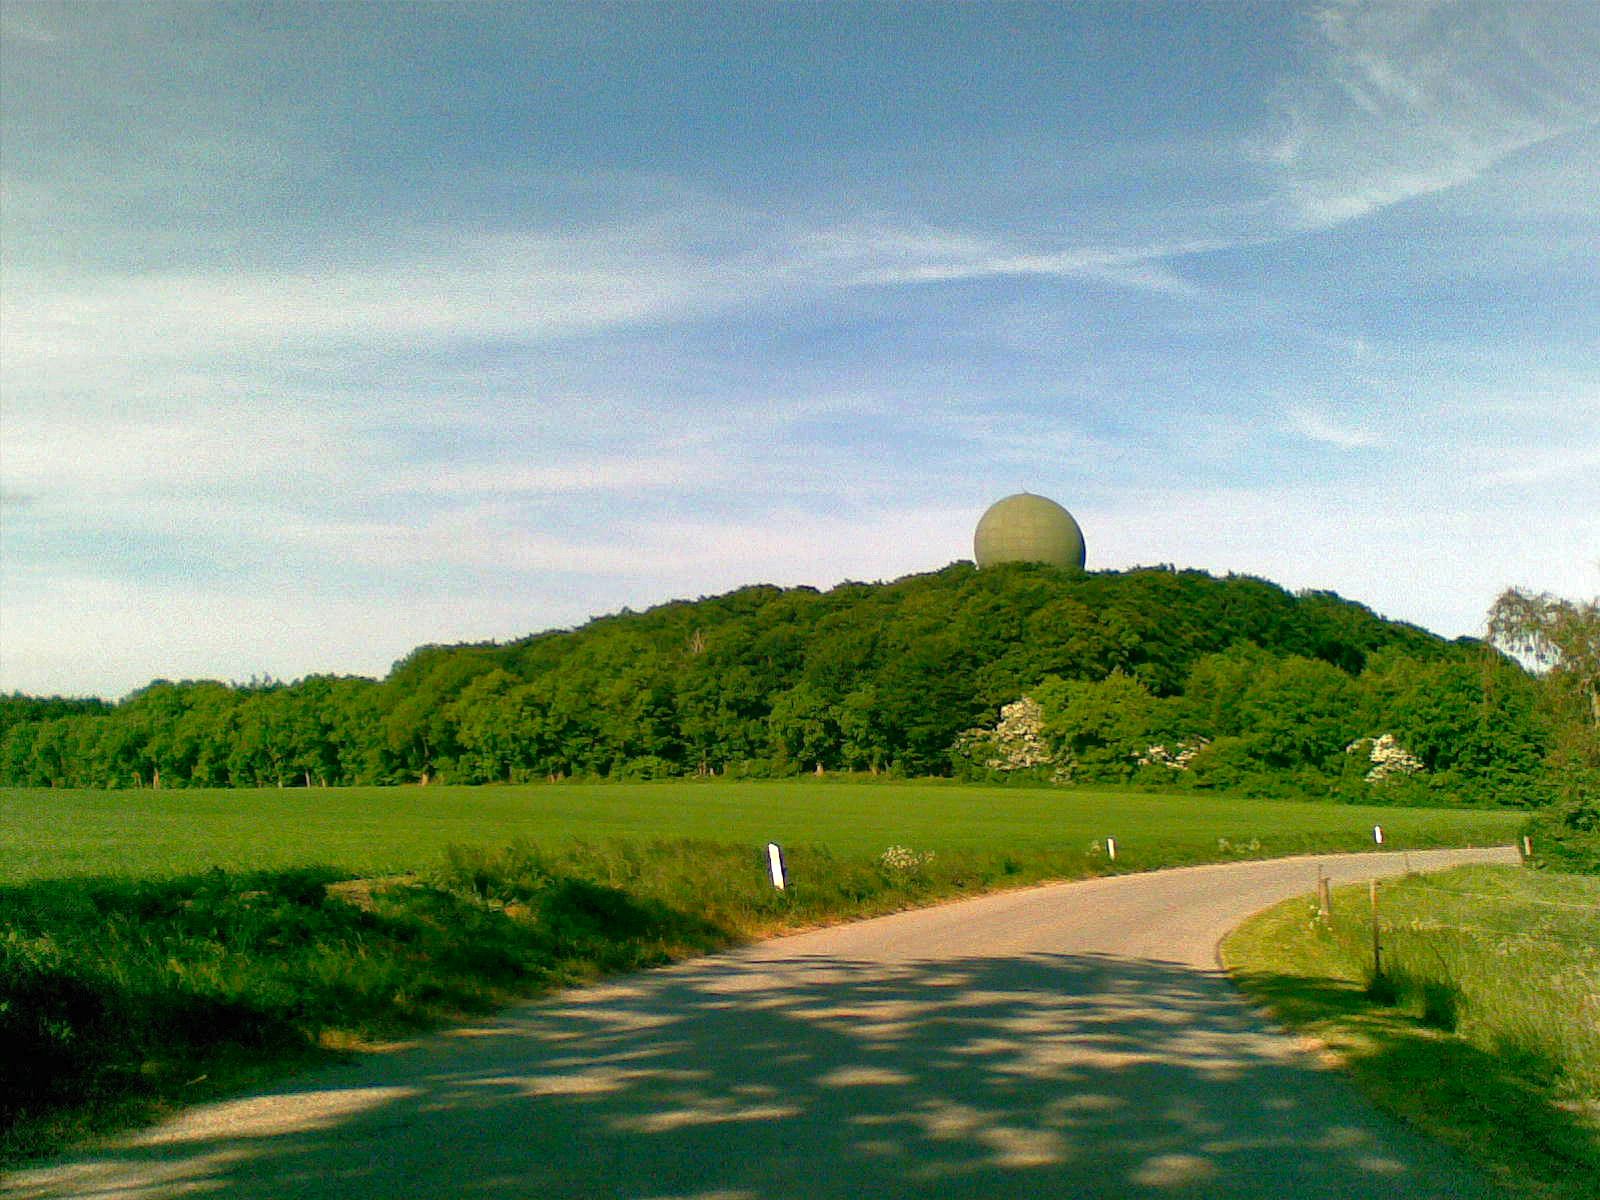 Radar ved Skovhuse kan ses mellem trækronerne